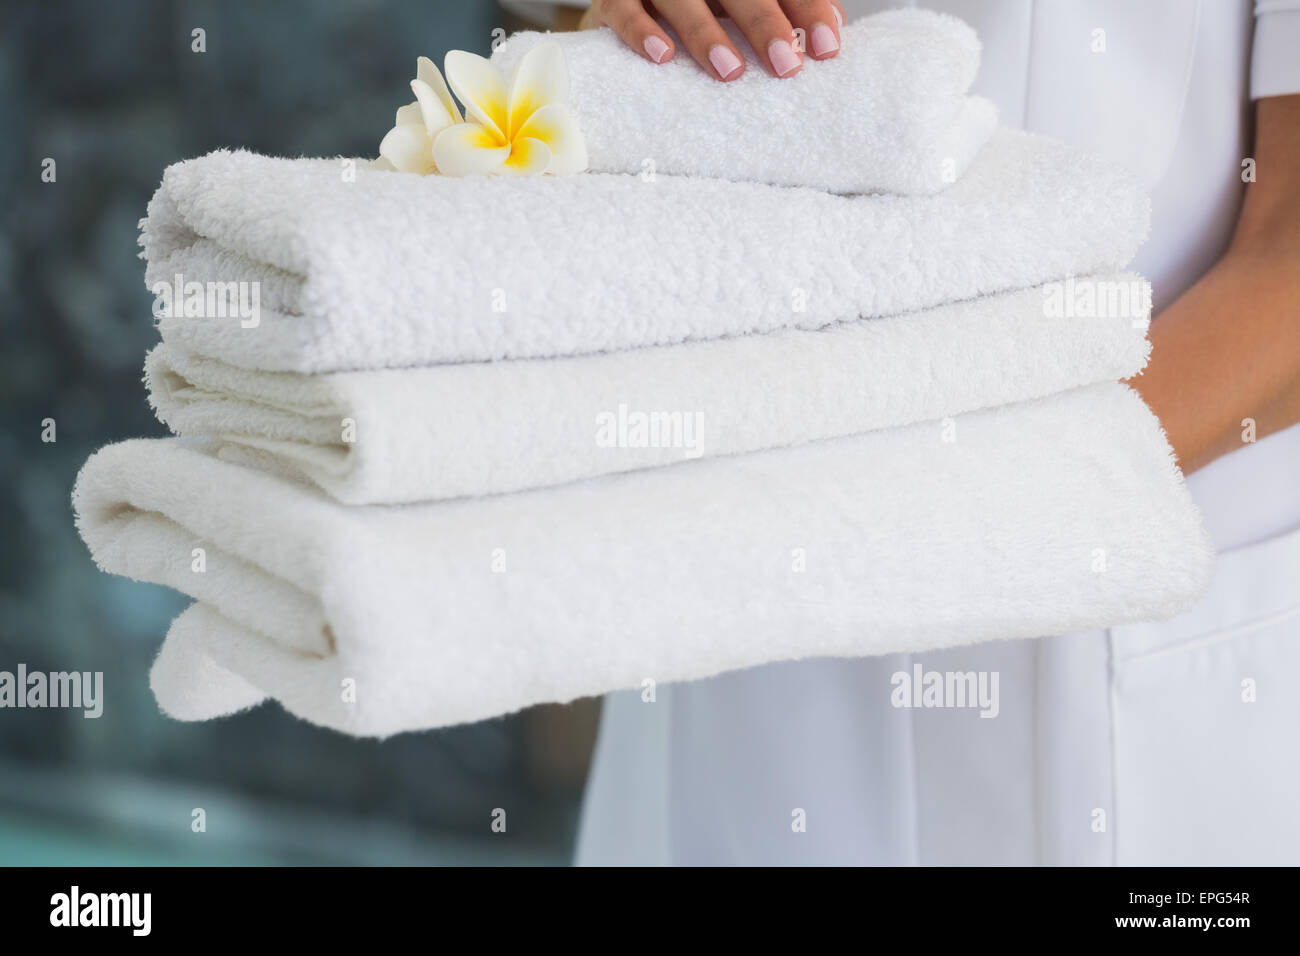 Как писать полотенце. Чистые полотенца. Полотенце для рук. Белое полотенце. Белоснежное полотенце в руках.